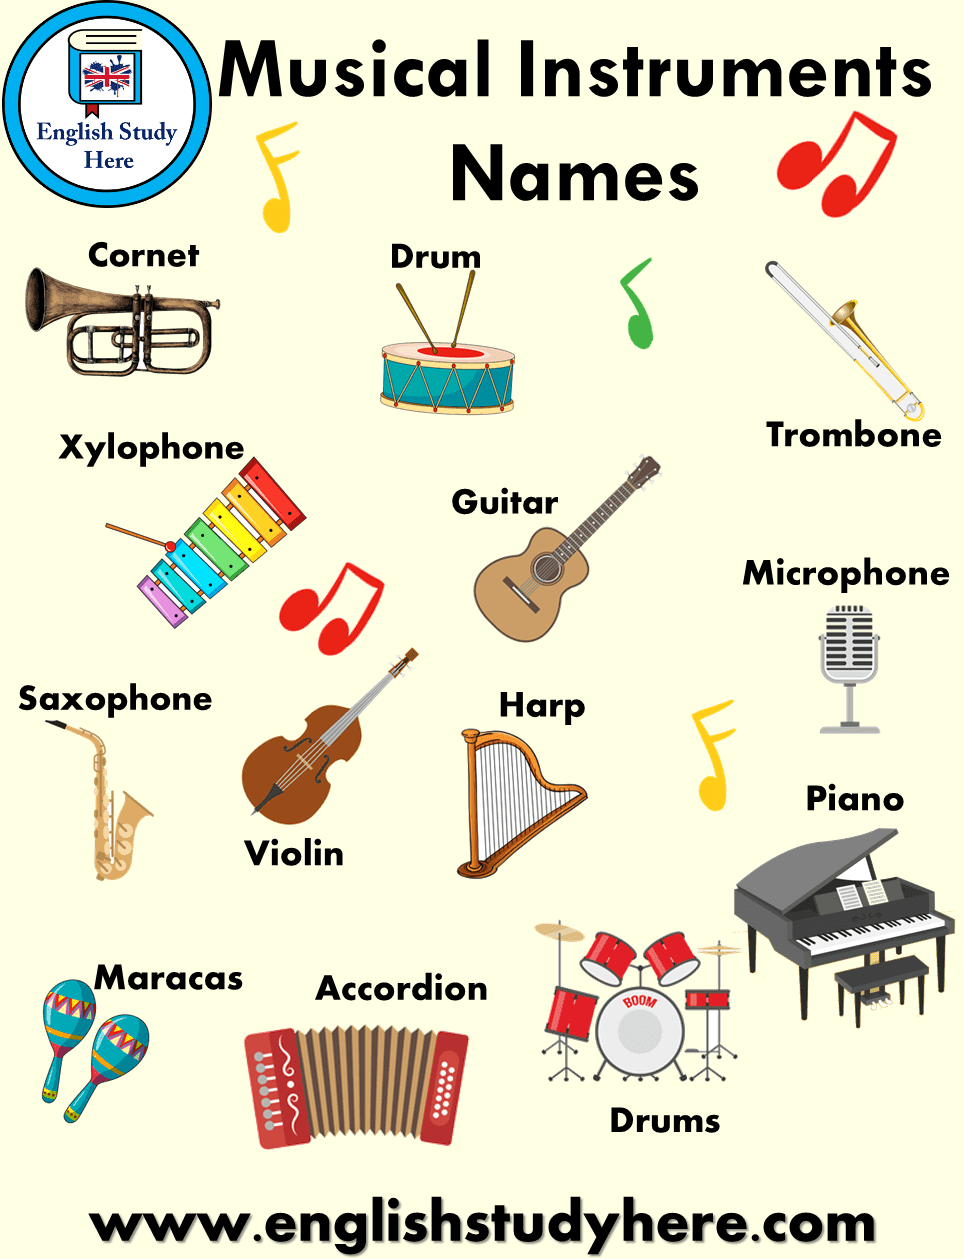 Стили песен на английском. Музыкальные инструменты на английском. Музыкальные инструменты на английском для детей. Музыкальные инструменты на анг. Название музыкальных инструментов на англ.